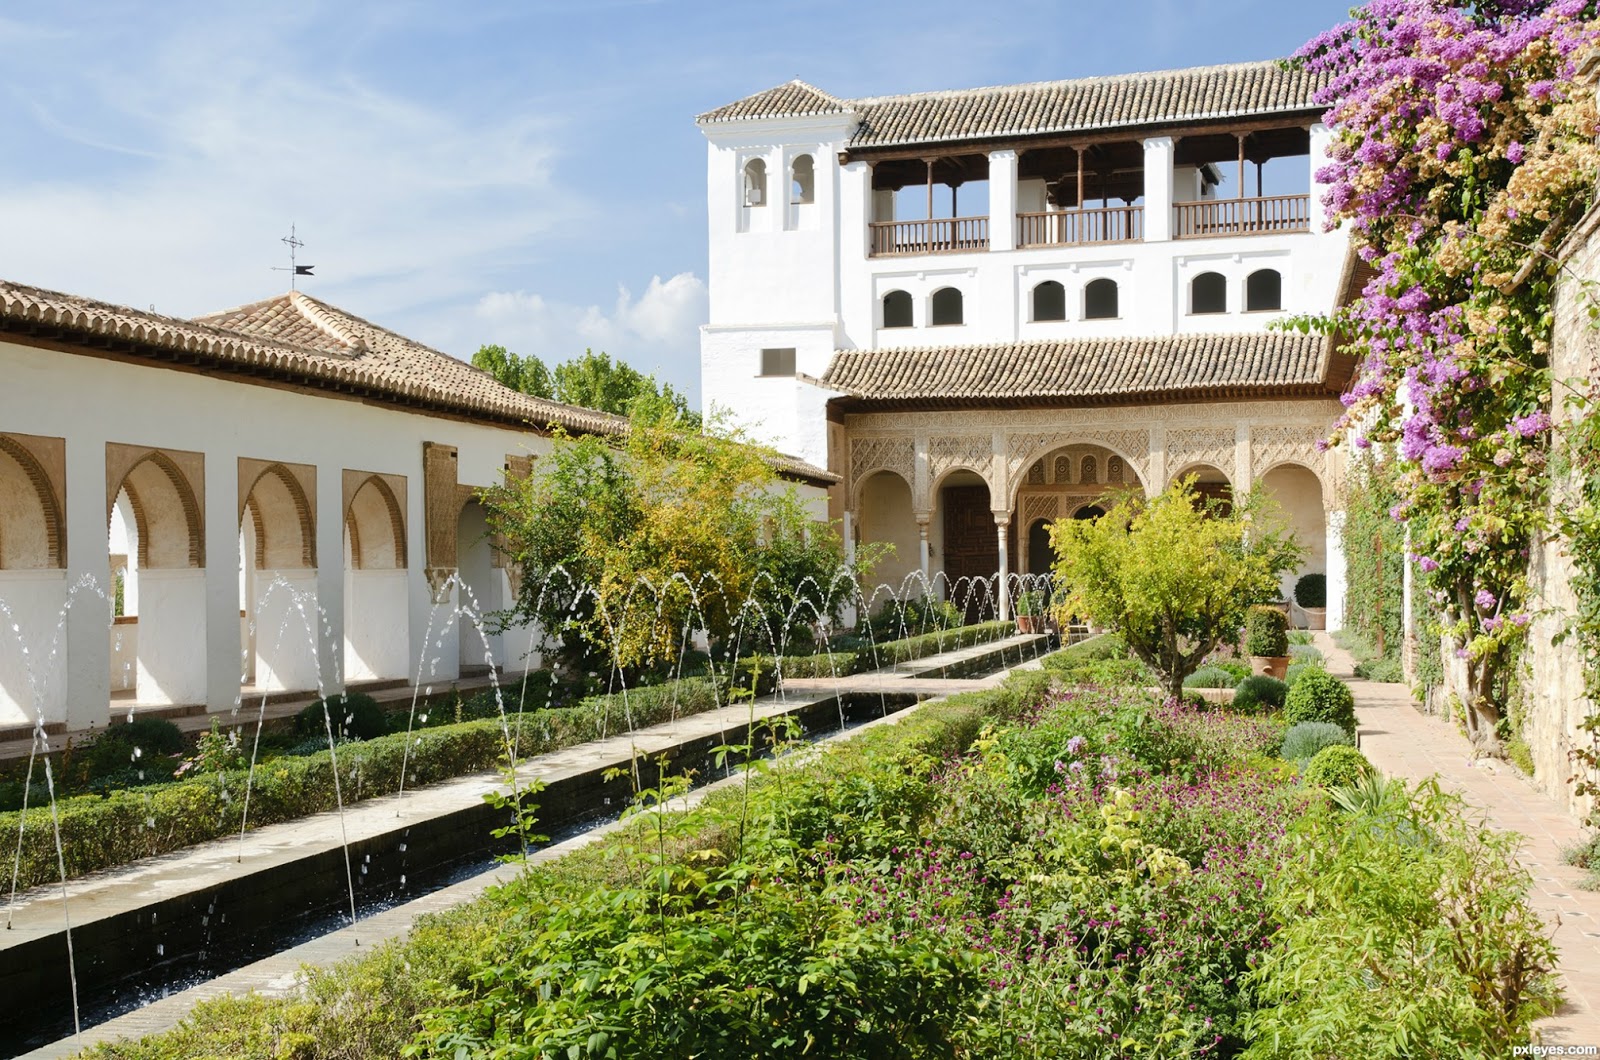 Experiencia Alhambra: Palacio Carlos V y Alcazaba